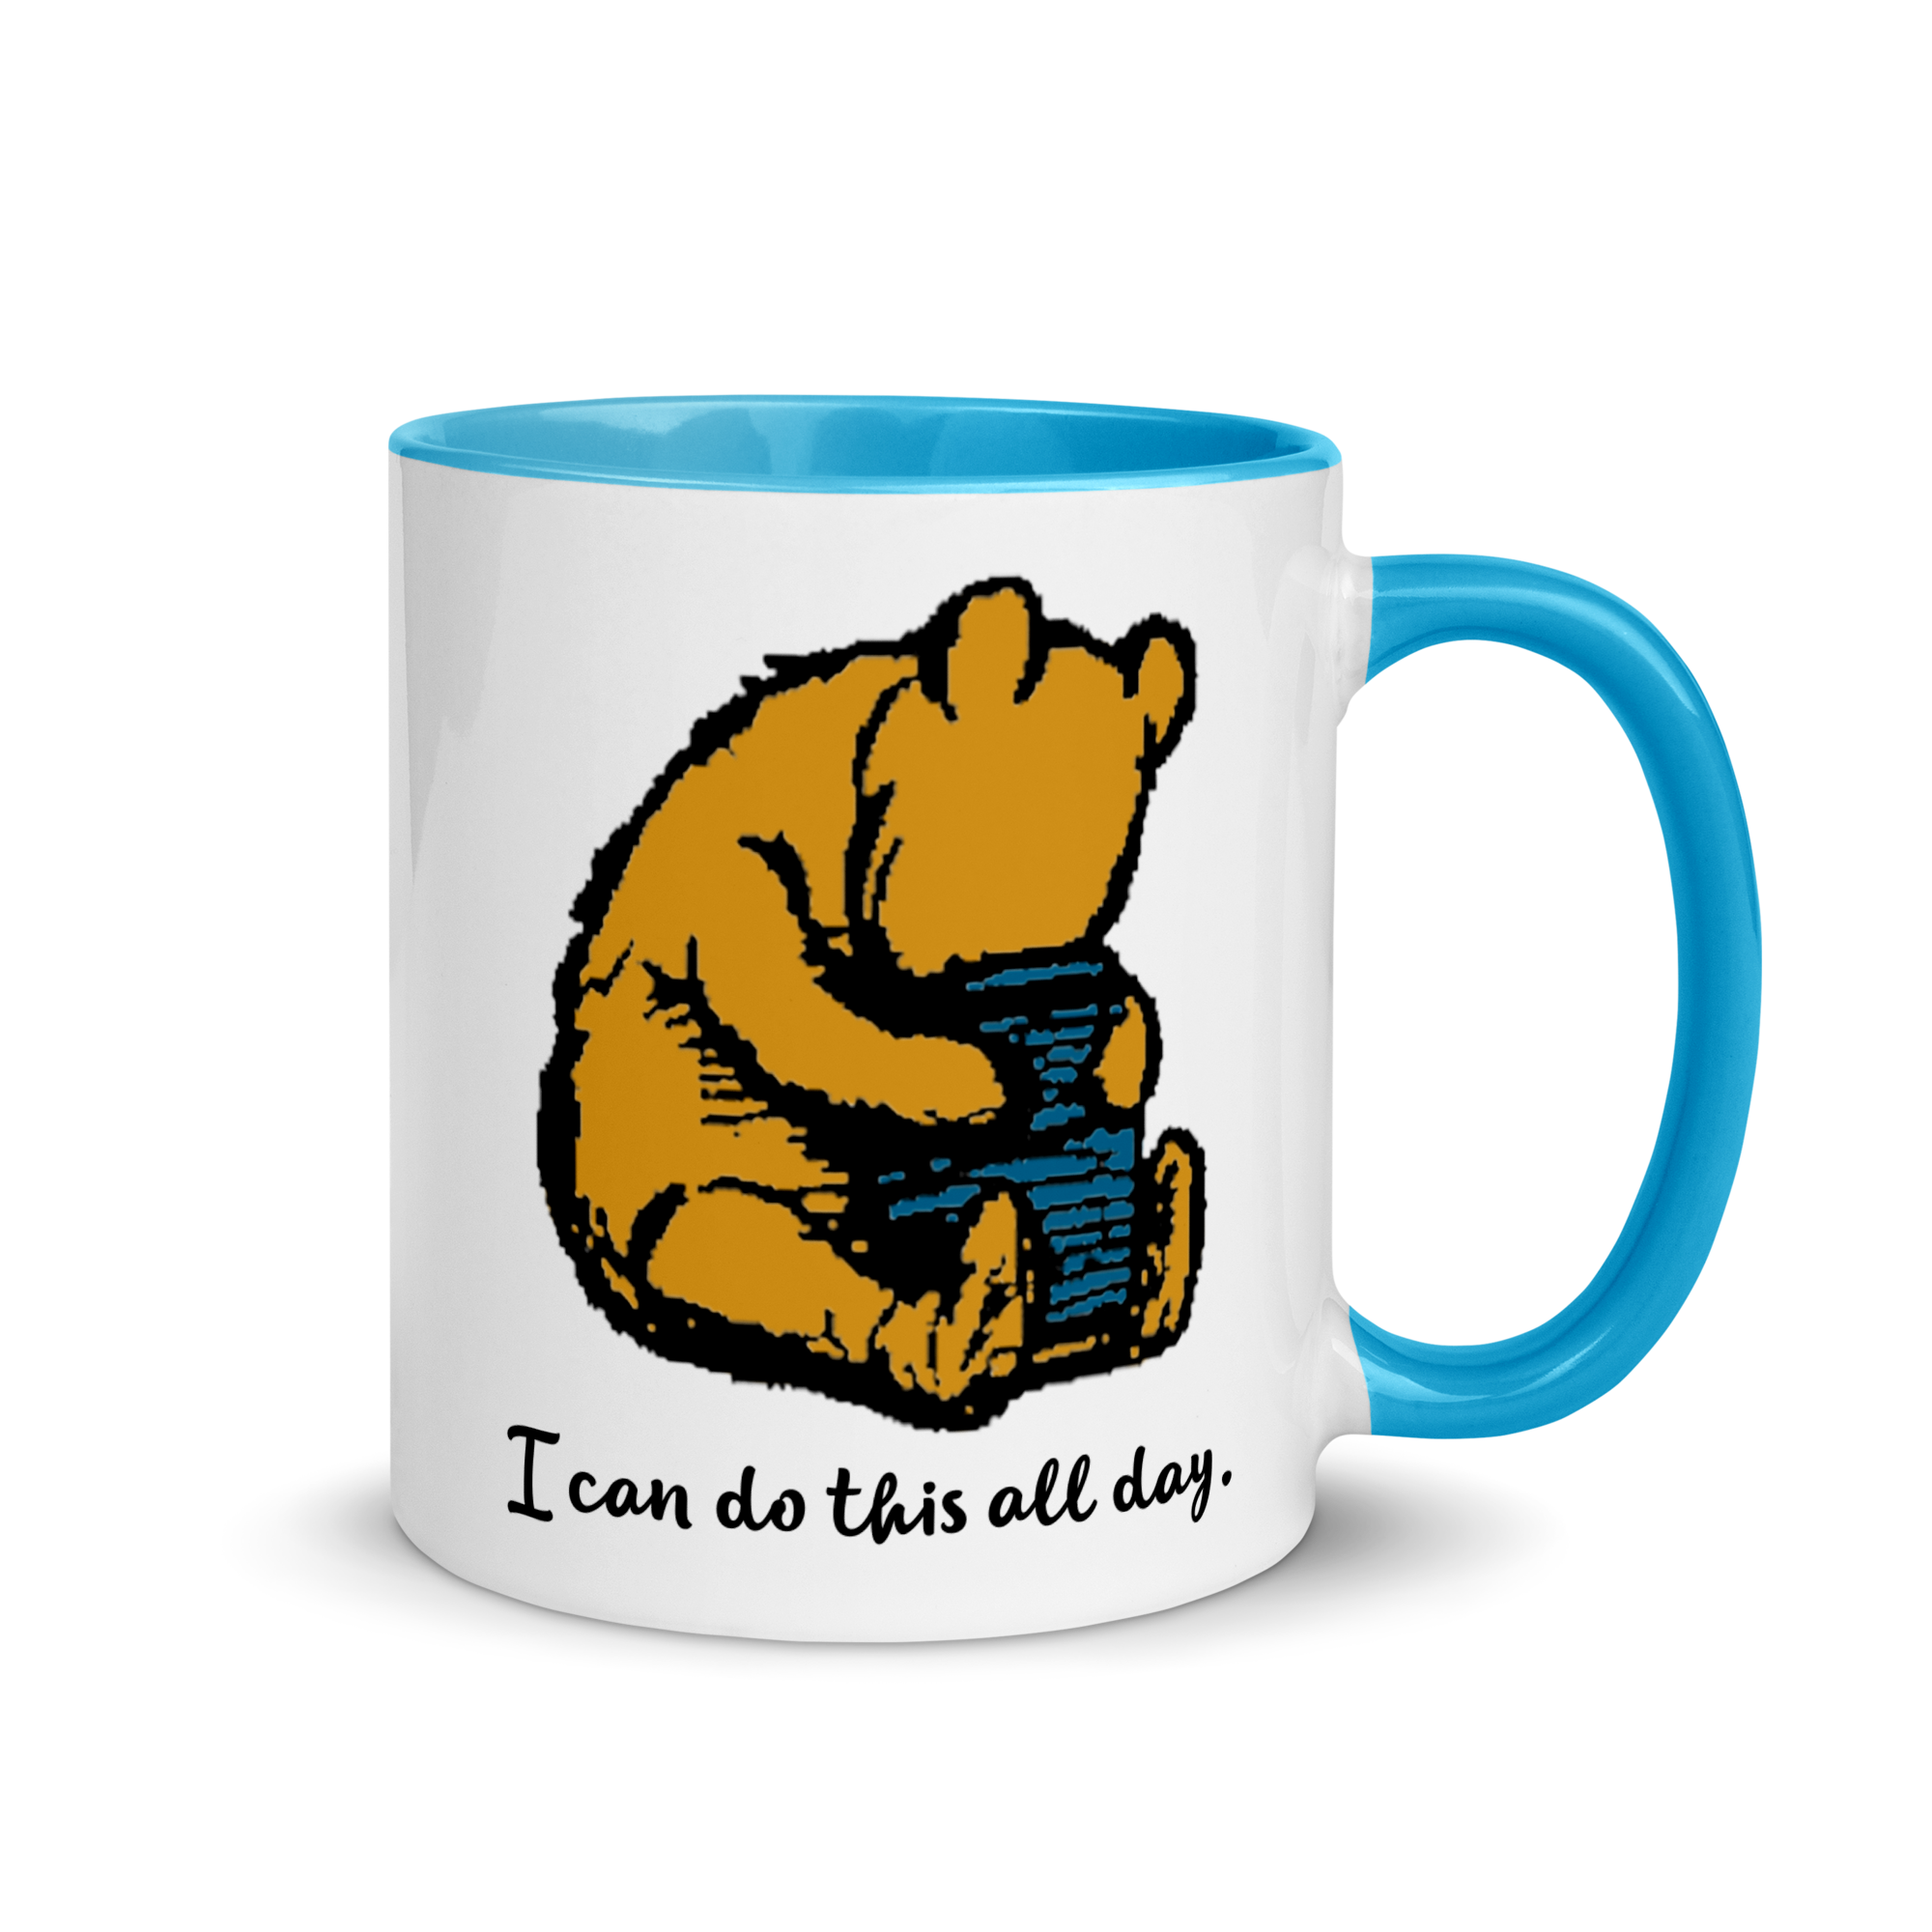 Classic Winnie-the-Pooh Mug with Blue Inside